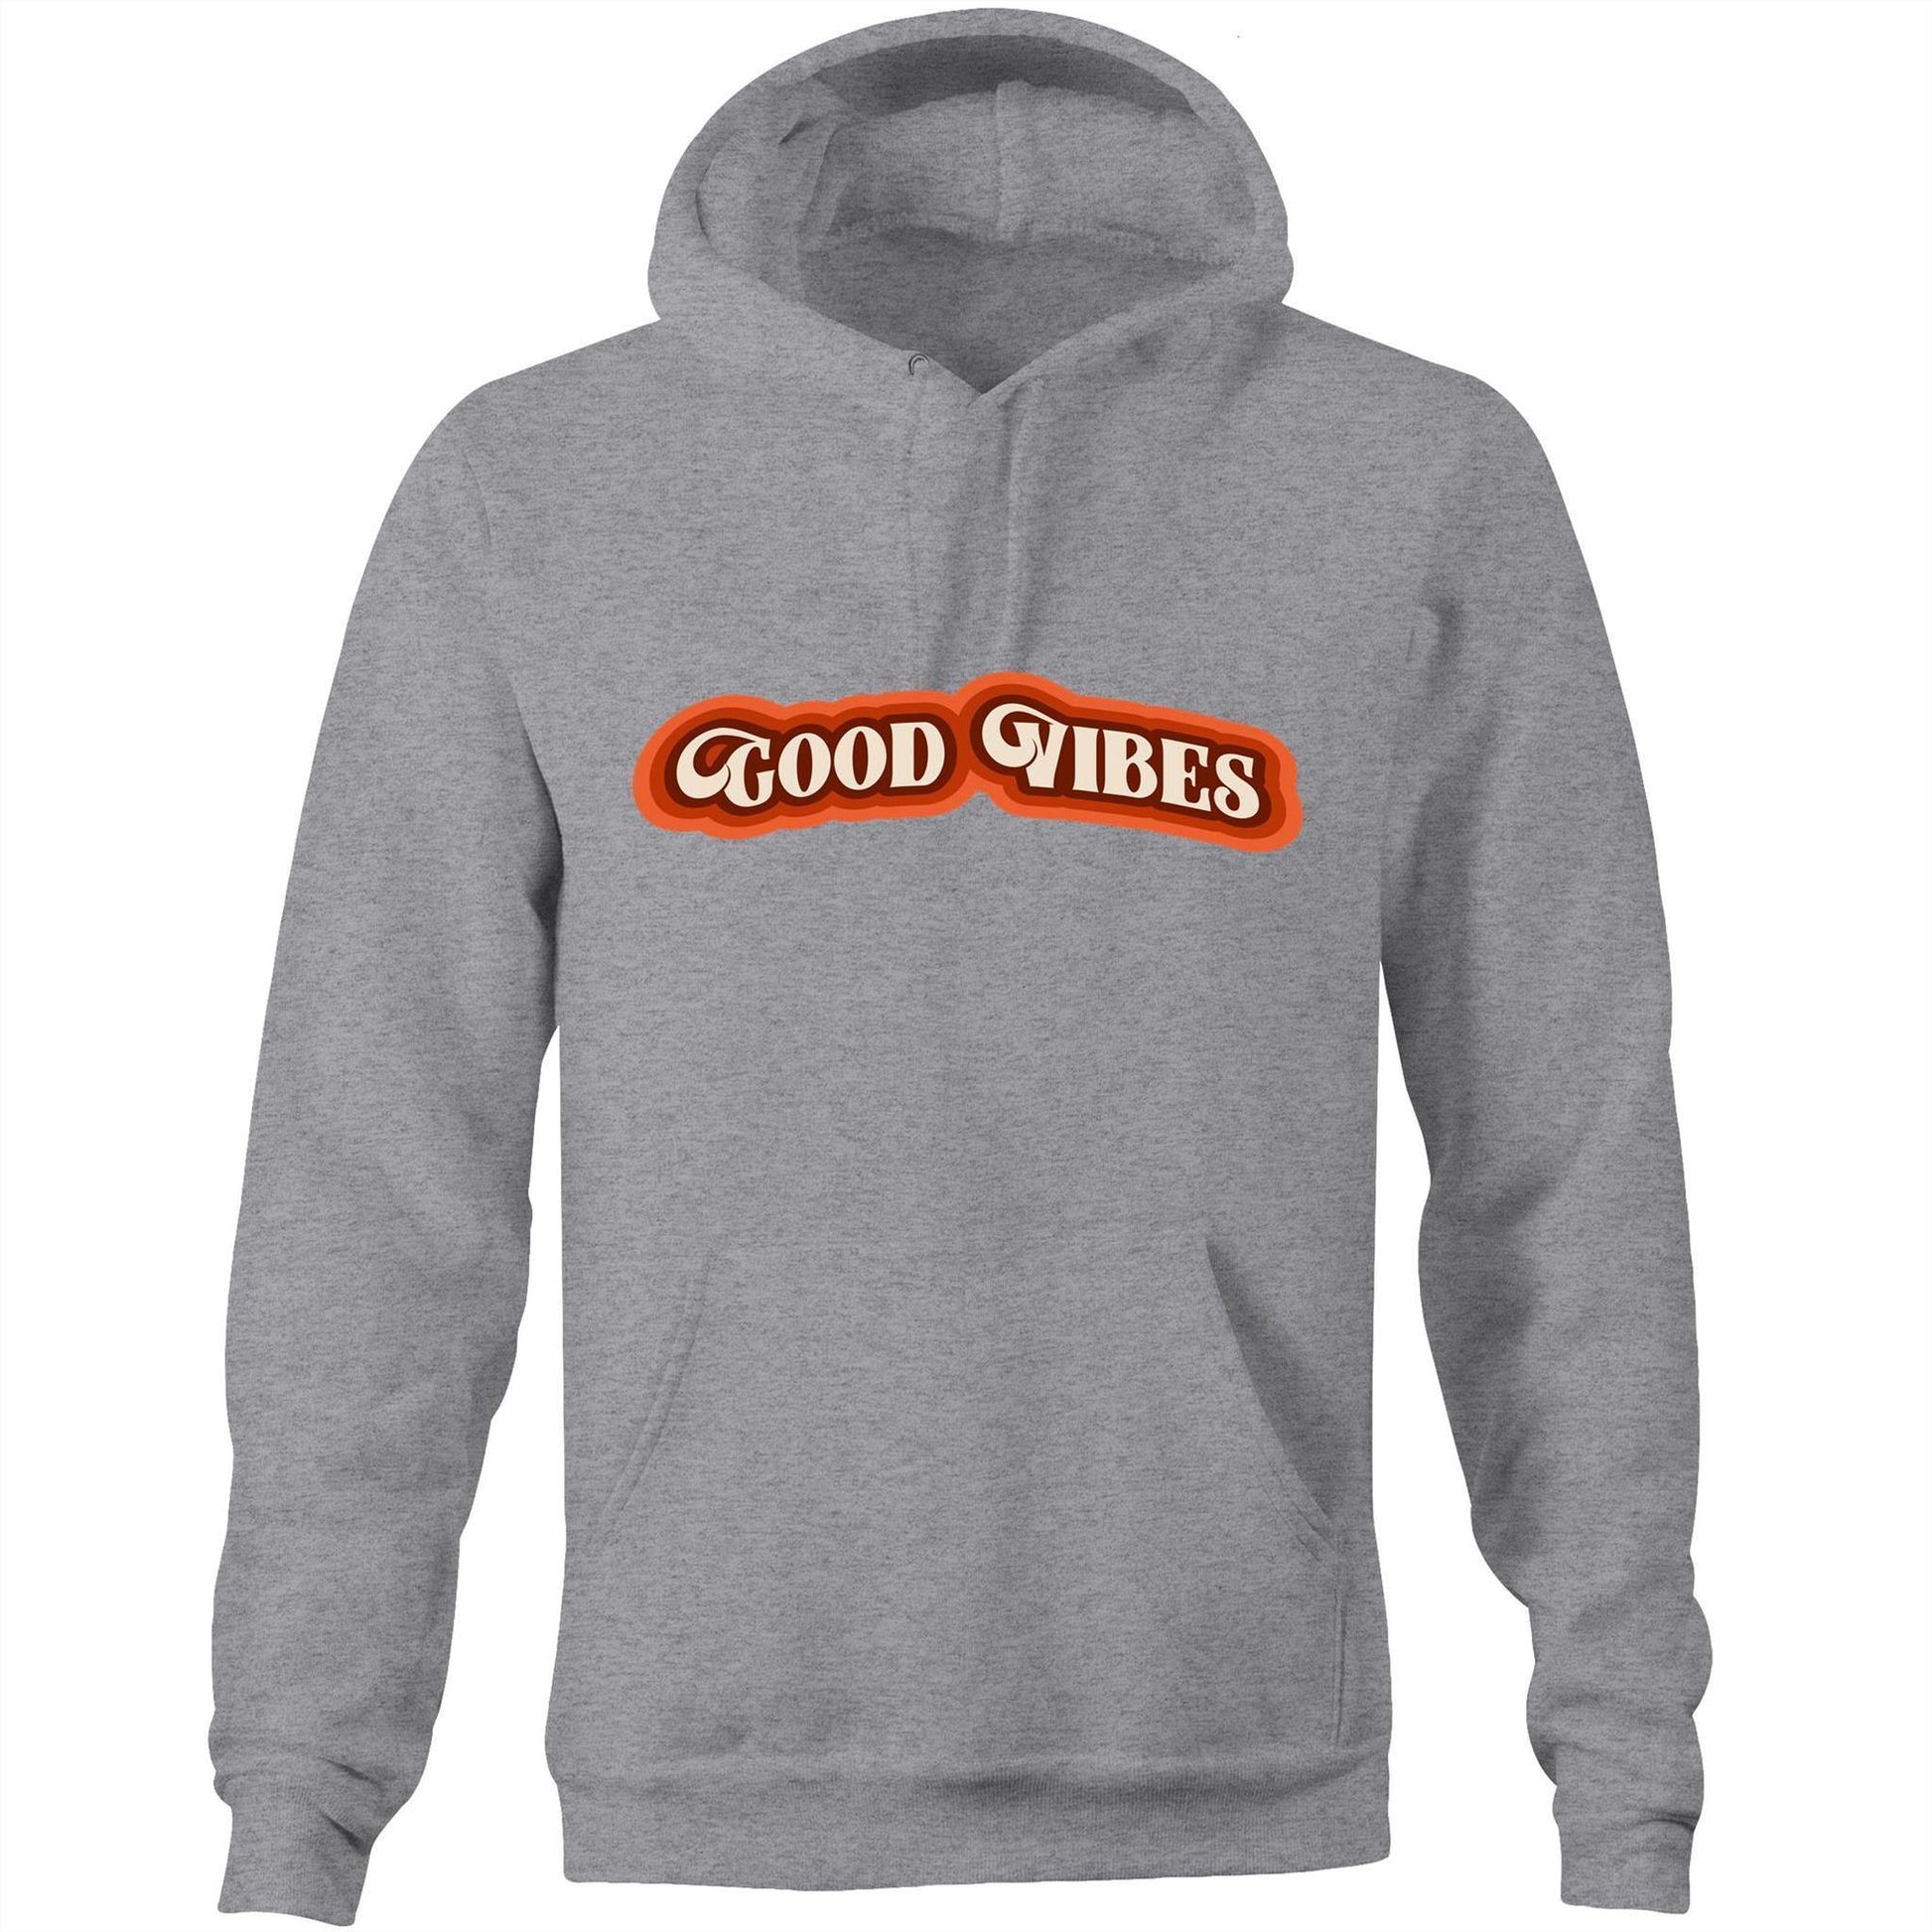 Good Vibes - Pocket Hoodie Sweatshirt Grey Marle Hoodie Mens Retro Womens